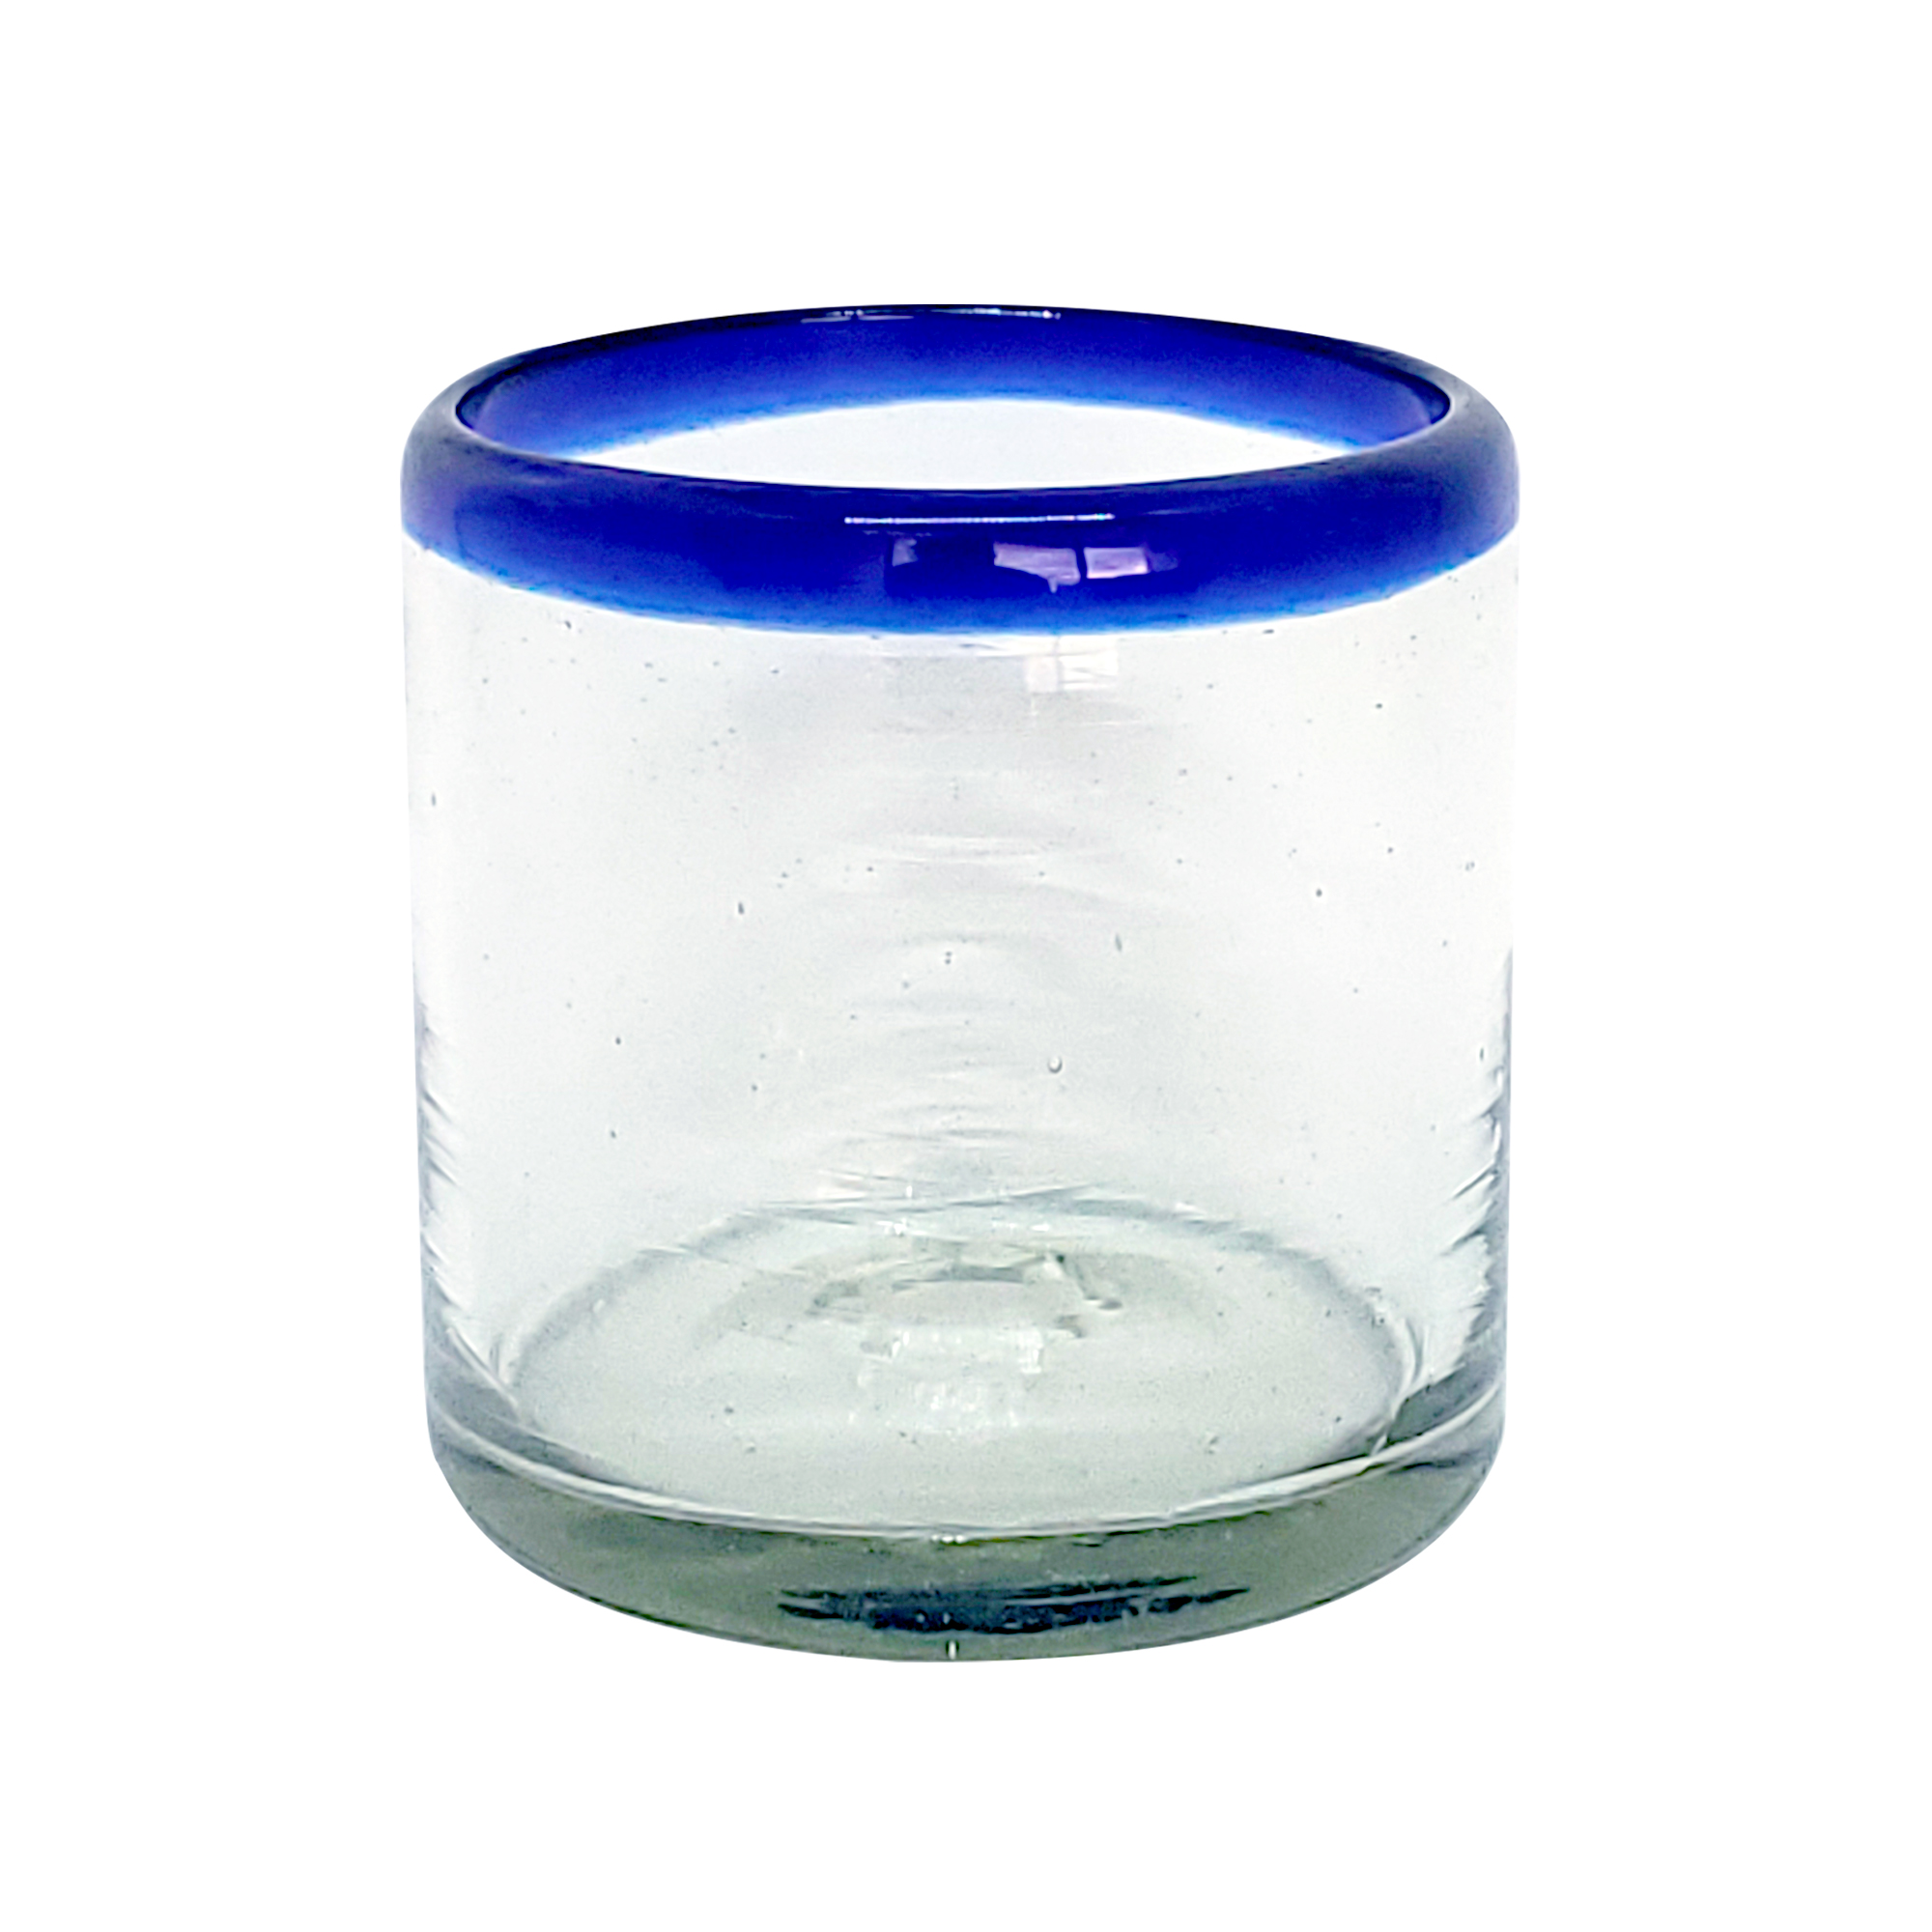 TOBHUYEXZ Juego de 6 vasos de cristal transparente con cuentas de cristal  transparente con patrón de…Ver más TOBHUYEXZ Juego de 6 vasos de cristal